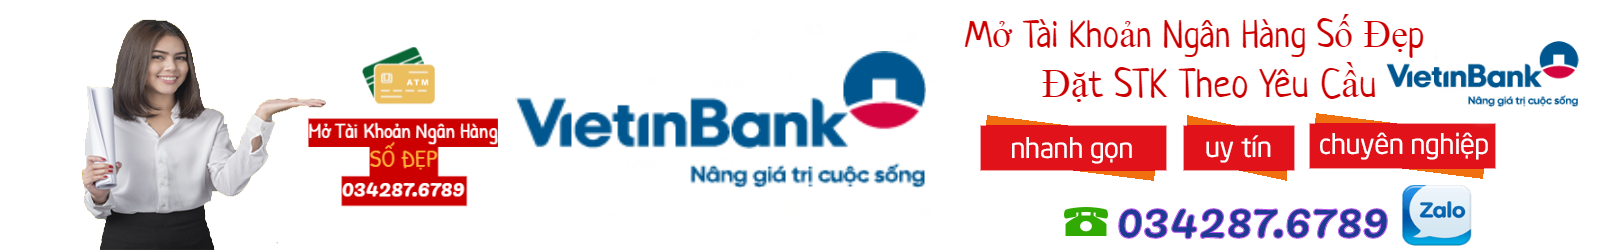 MuaTaiKhoanSoDep.Com - Chuyên mở tài khoản ngân hàng số đẹp uy tín hàng đầu việt nam 